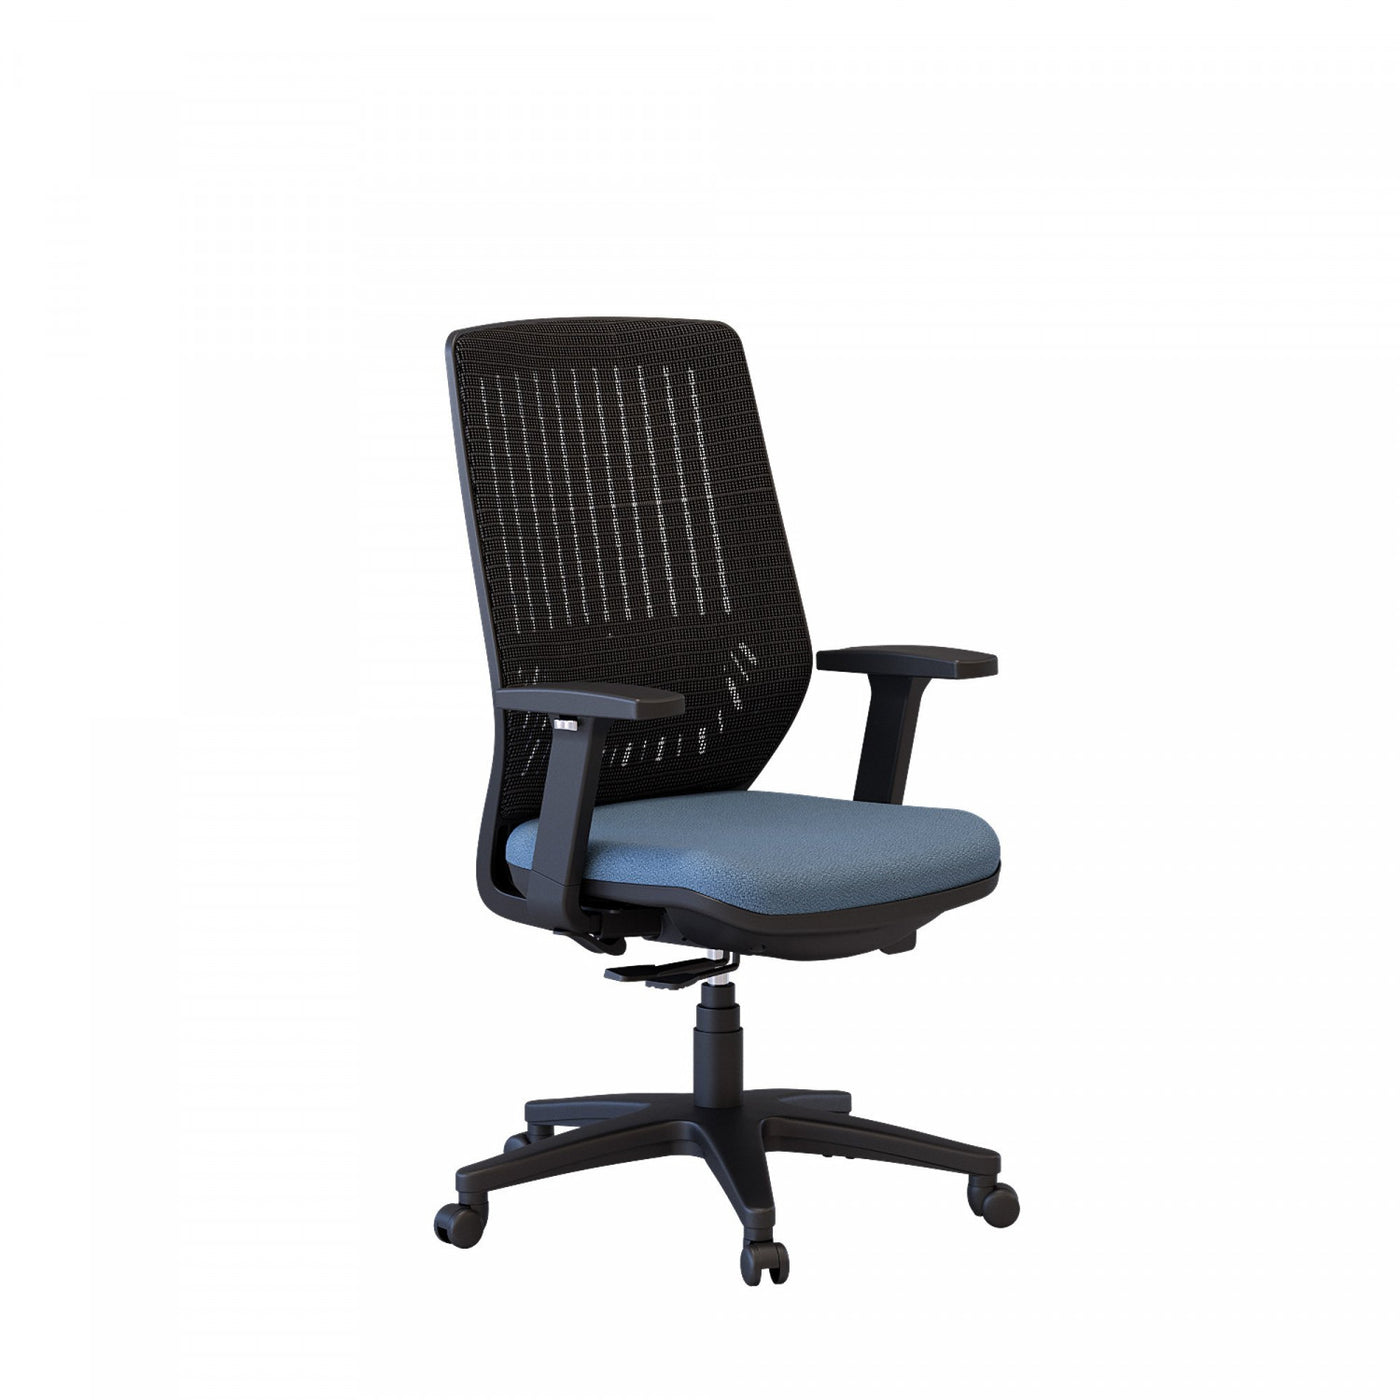 Mason Office Chair - Blue Sapphire